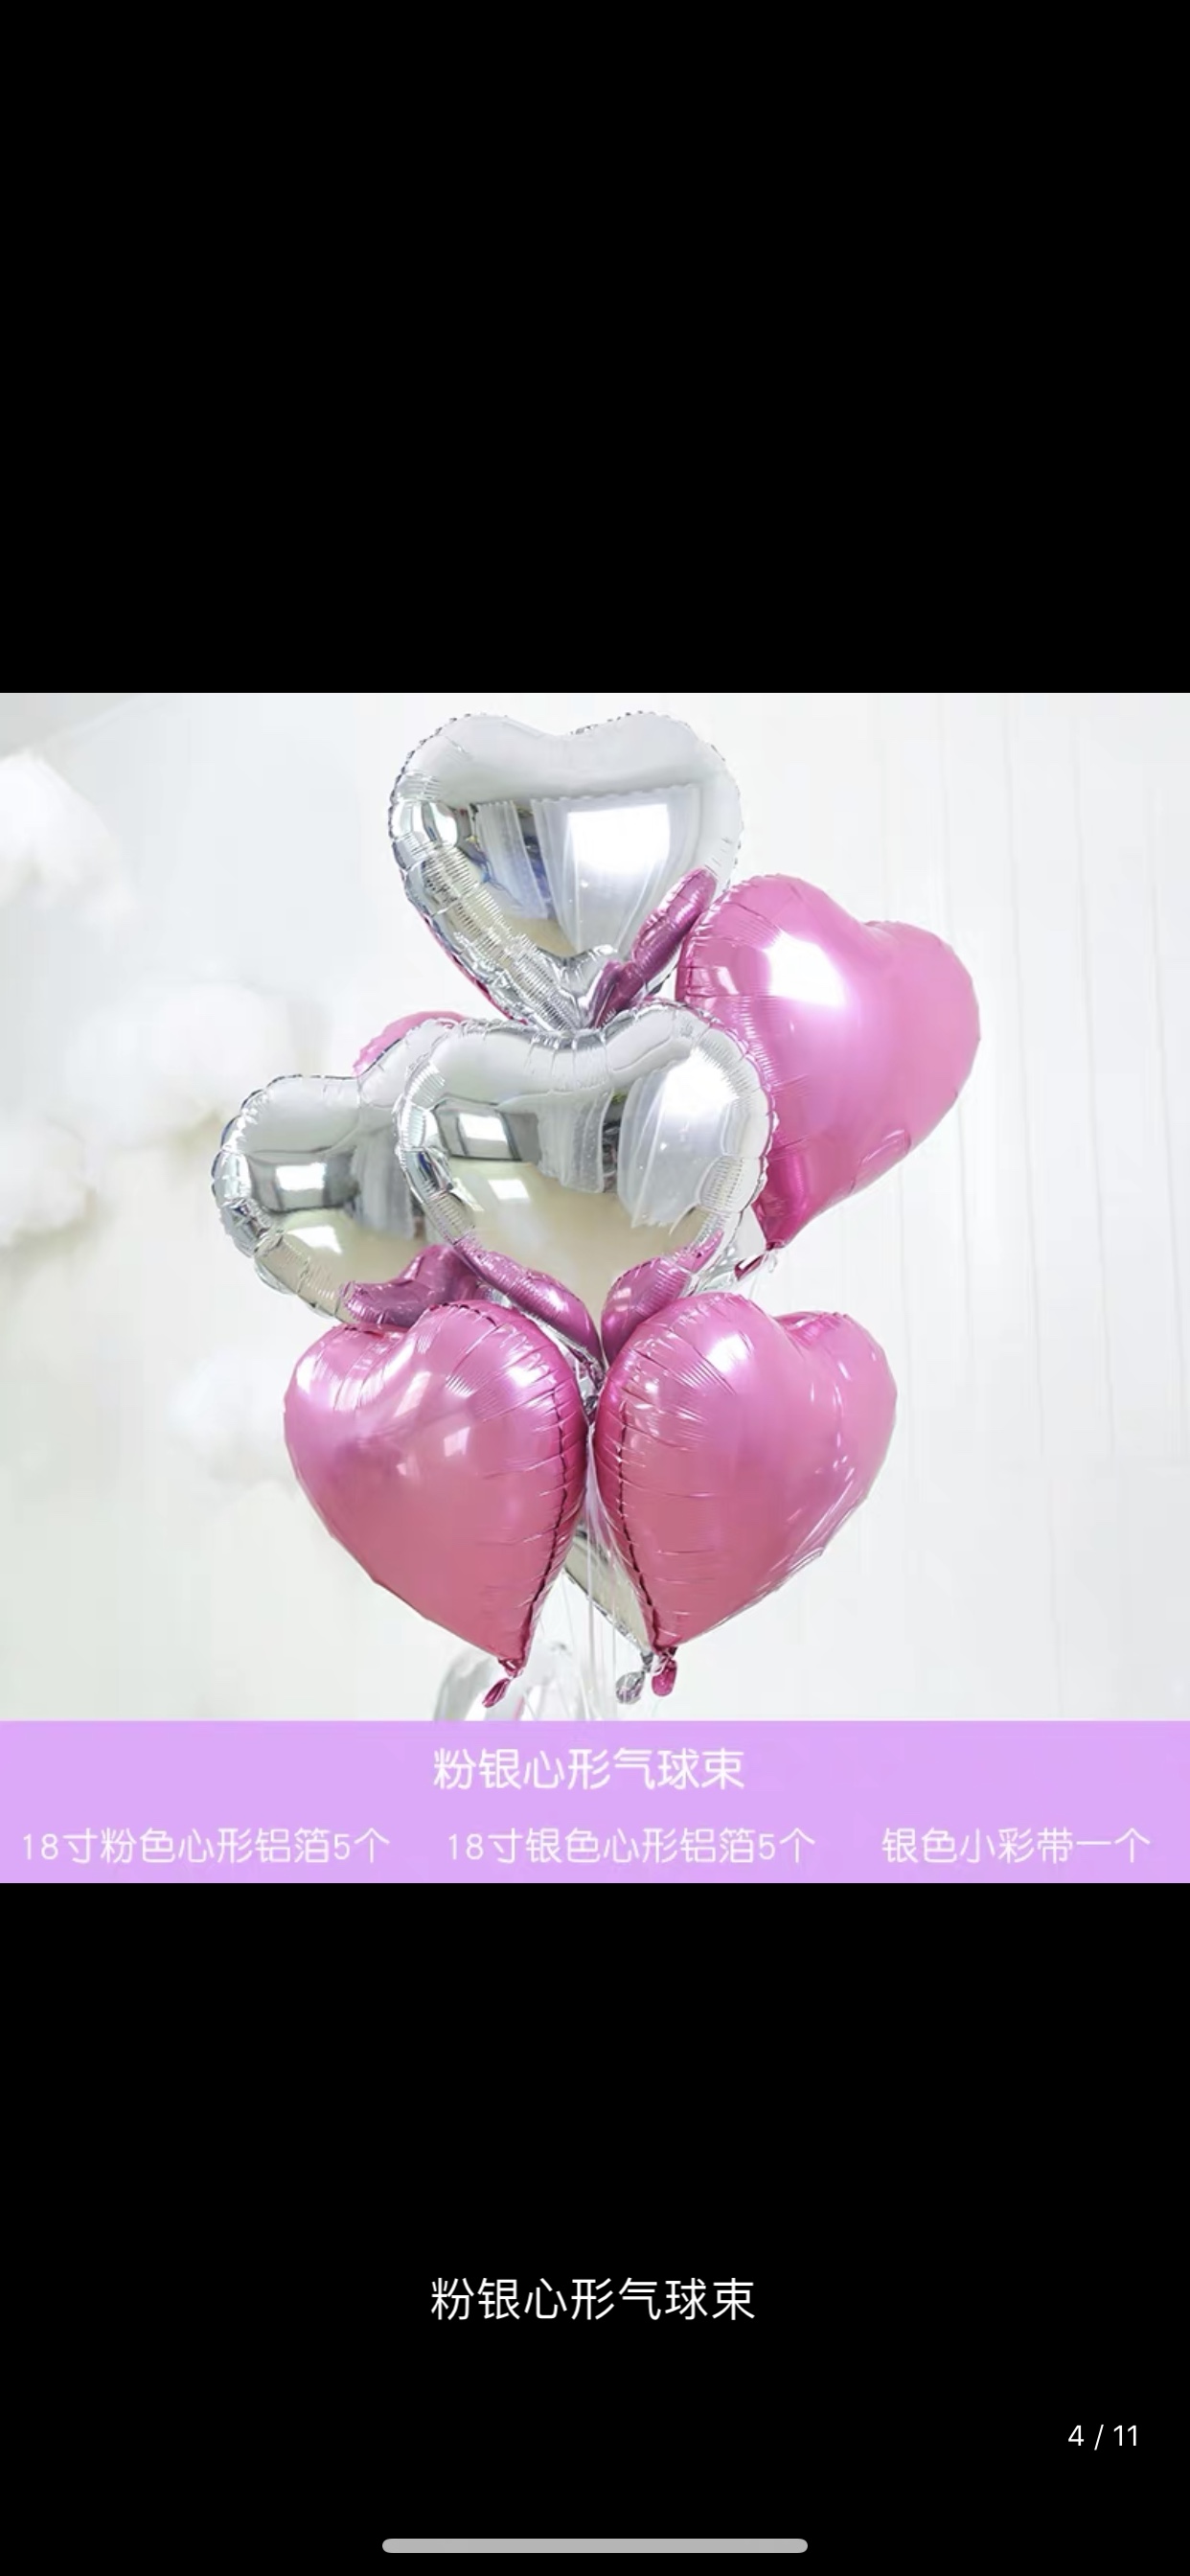 铝膜气球 18寸心形组装8件套装 各种派对节日生日婚庆房间装饰用品 1212店 可订做详情图4